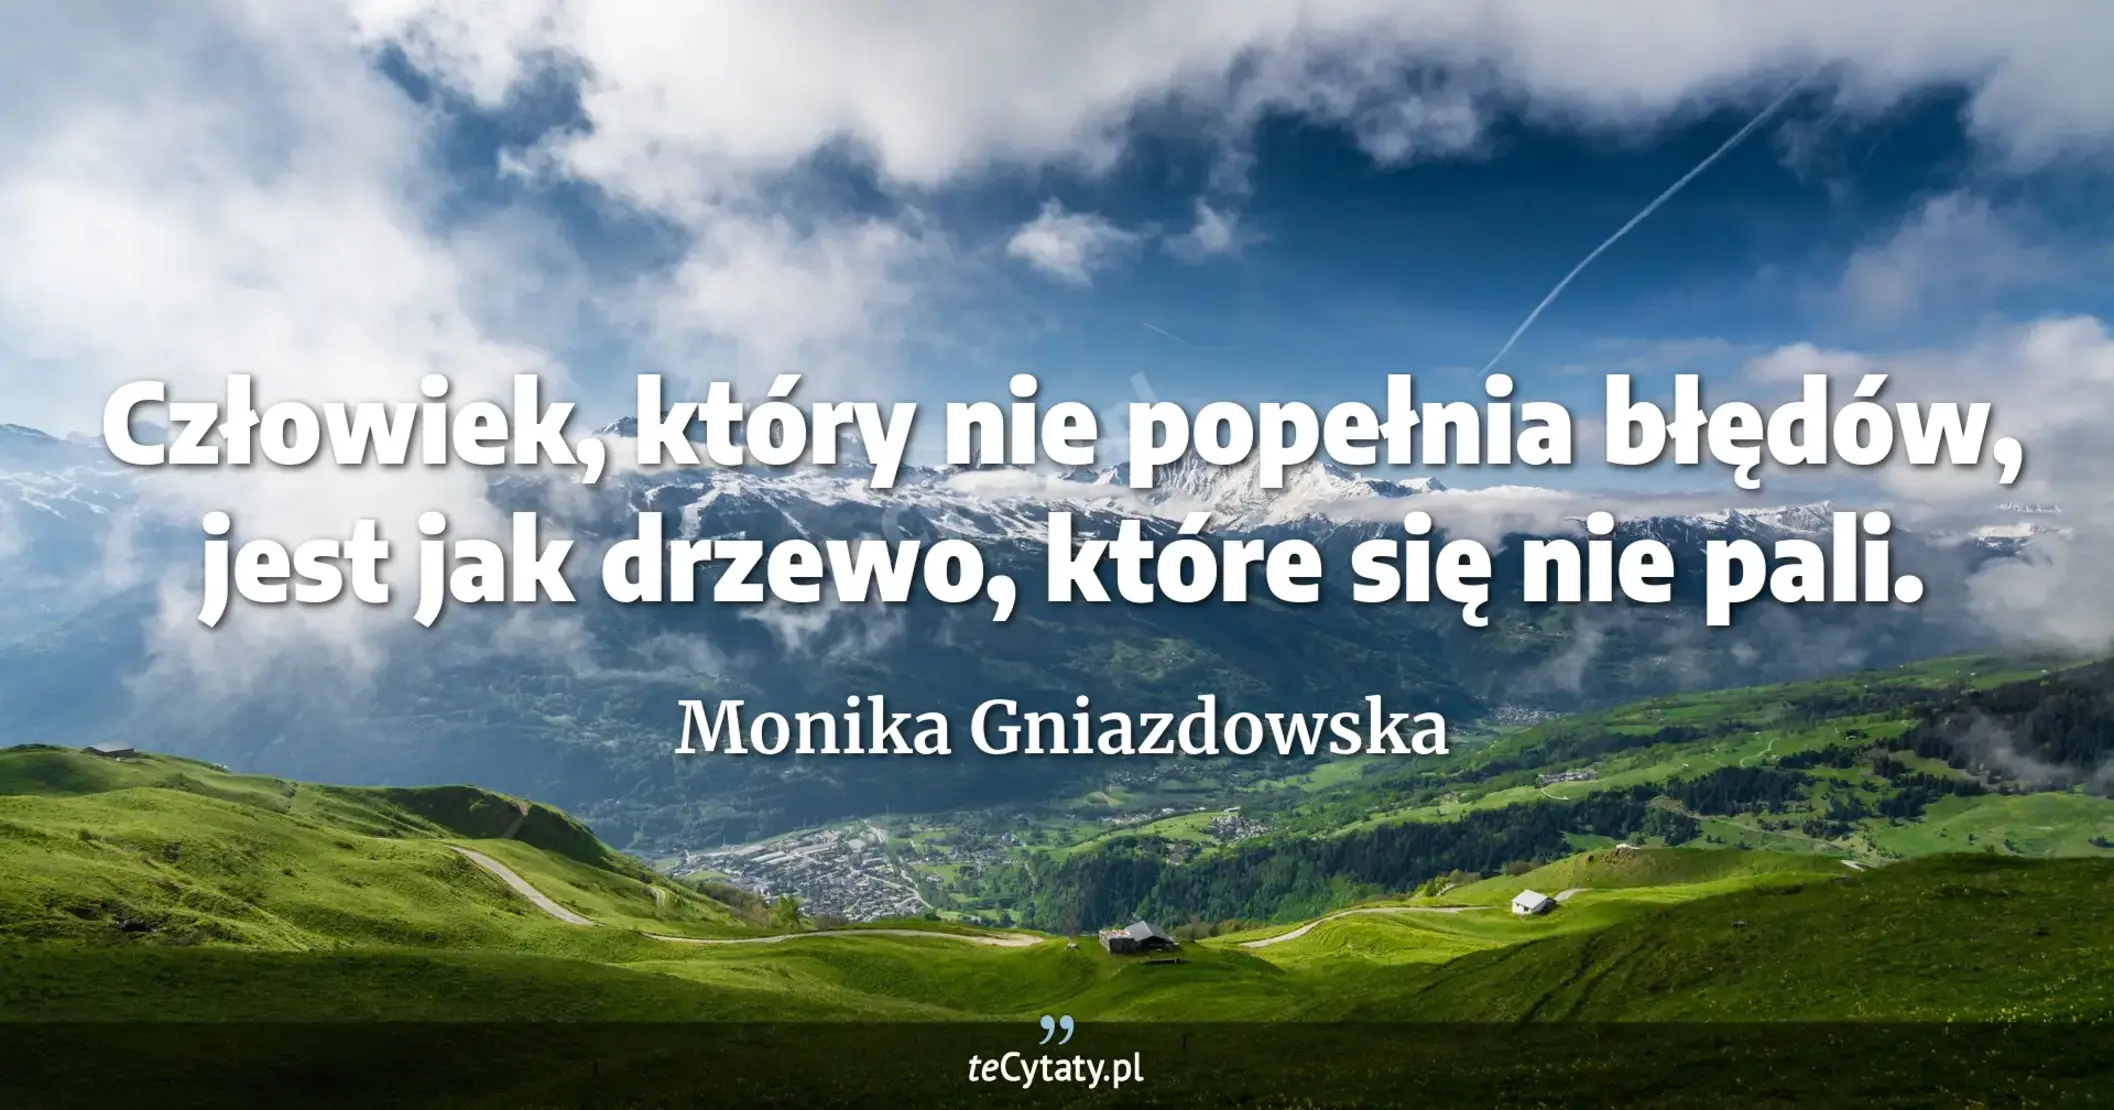 Człowiek, który nie popełnia błędów, jest jak drzewo, które się nie pali. - Monika Gniazdowska